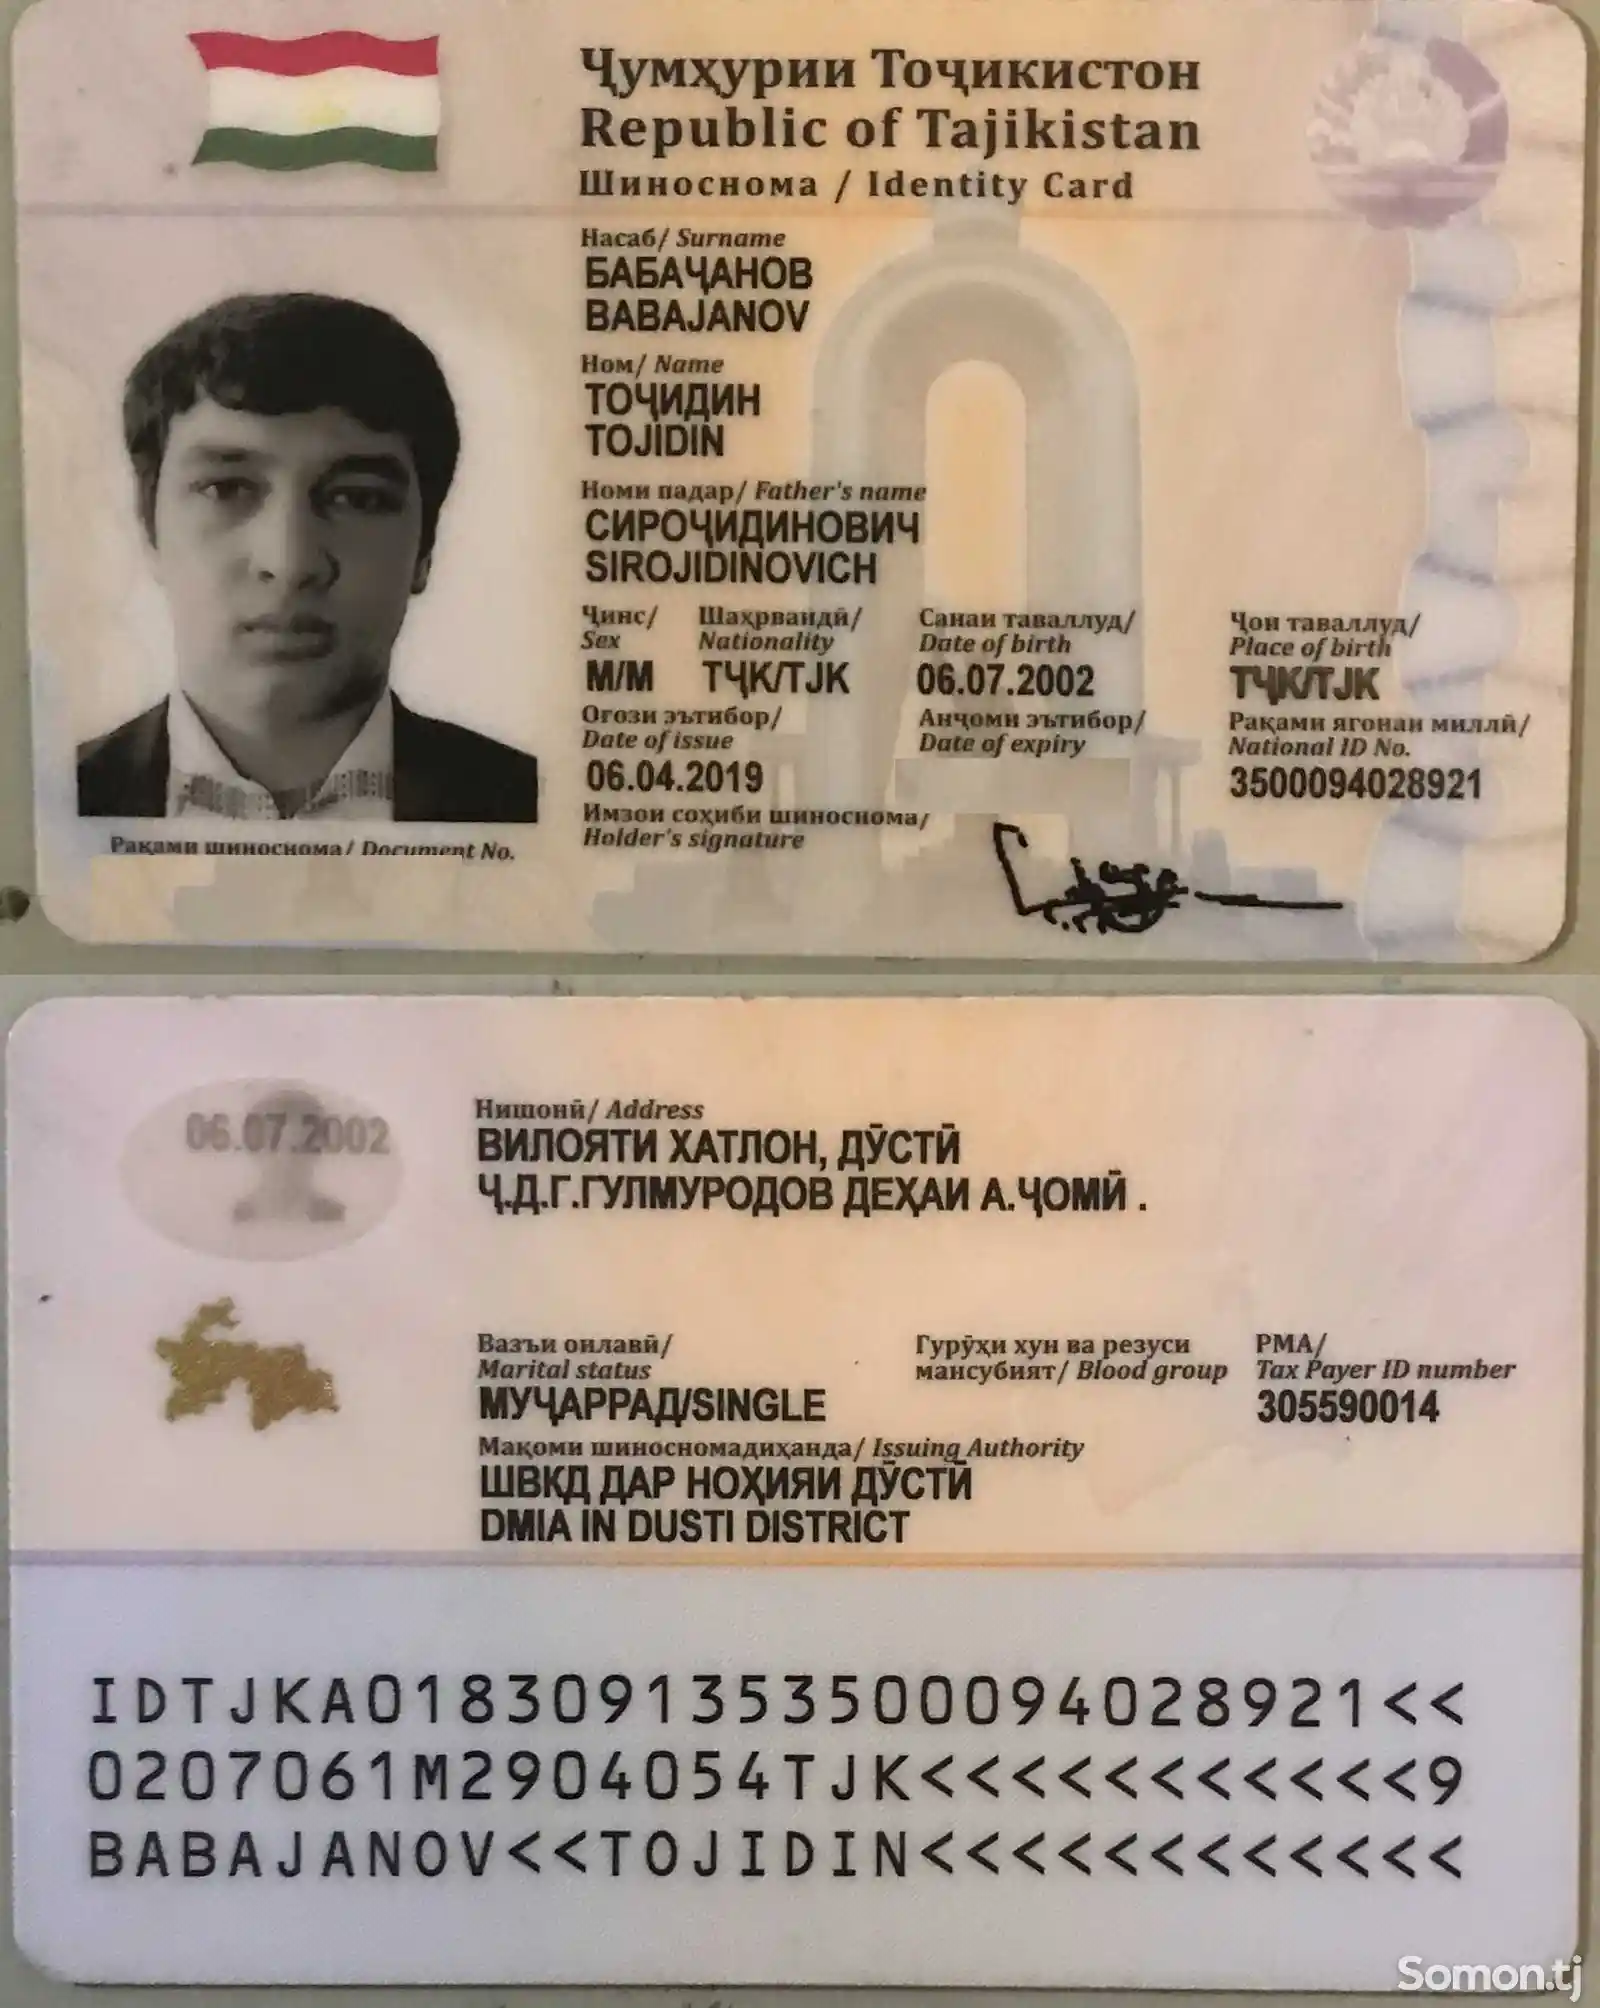 Найден паспорт на имя Бабачанов Точиддин